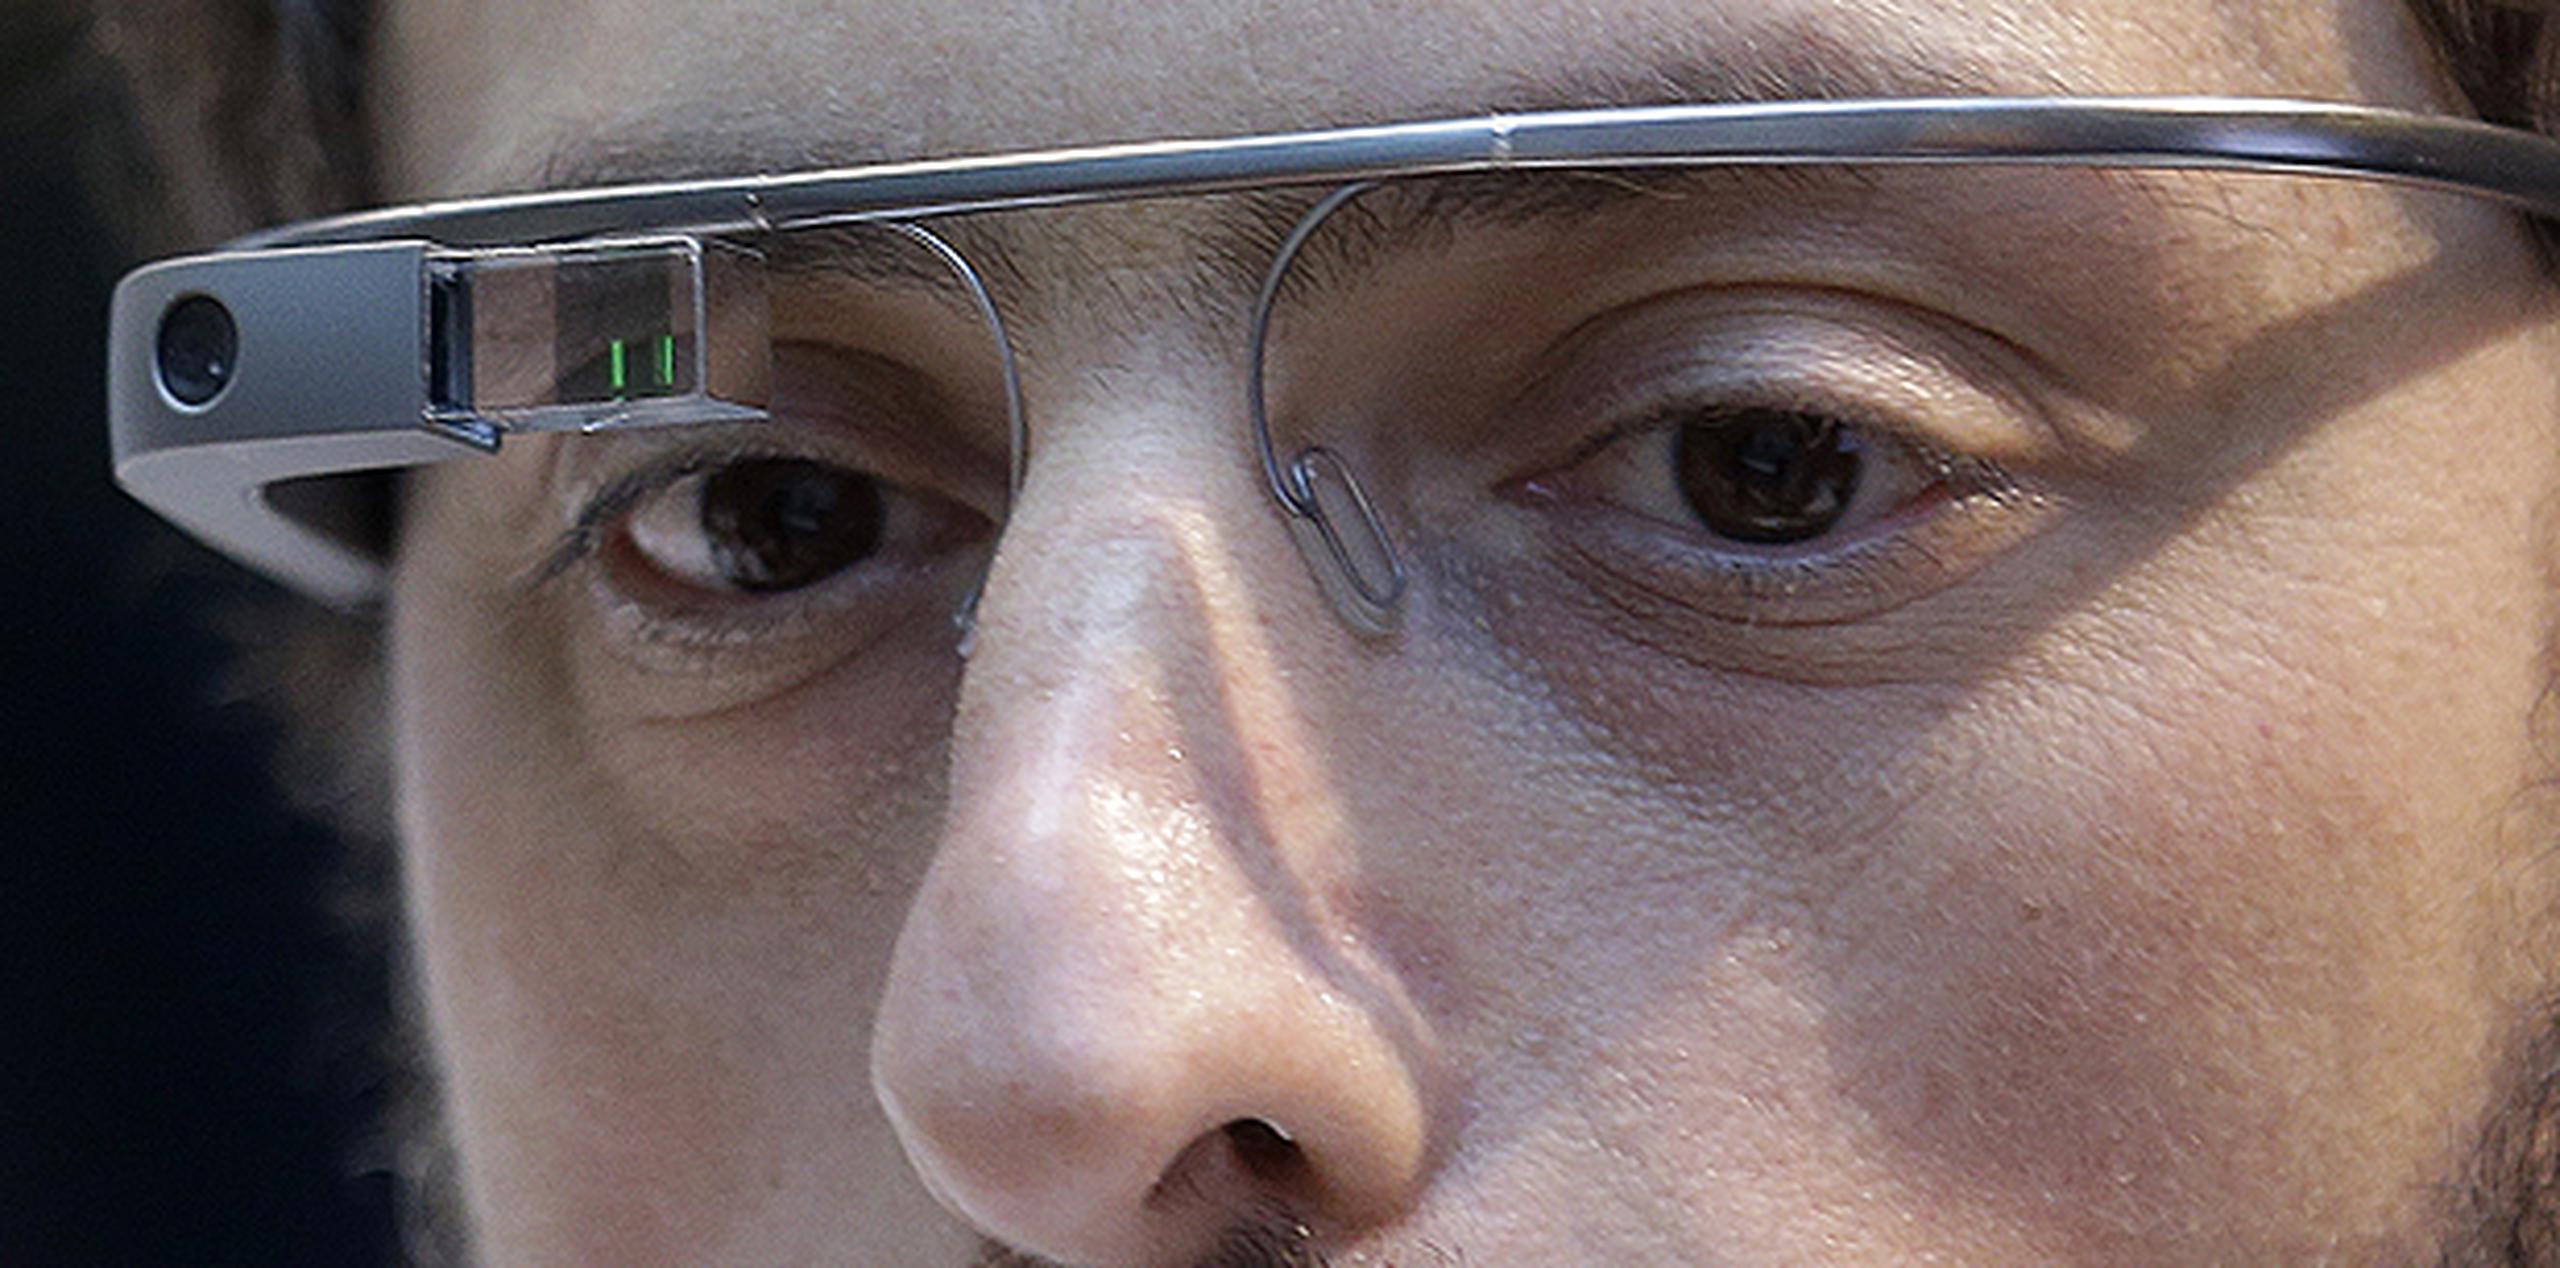 Google no ha revelado cuántas unidades vendió de la versión Explorer de las Glass. (Archivo)